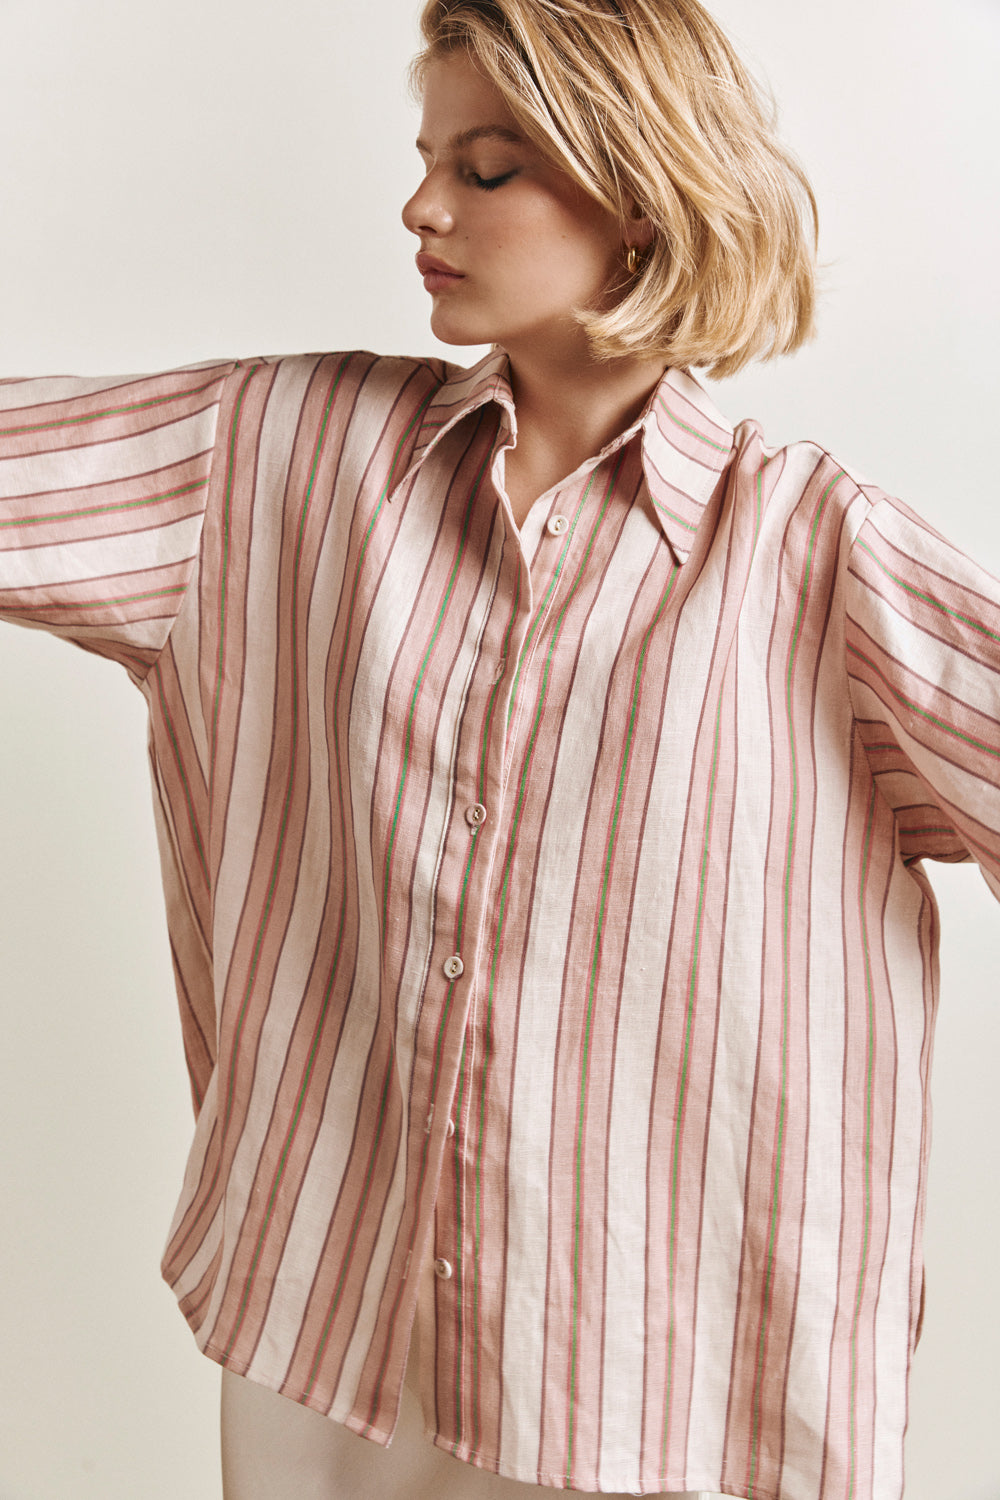 Leila Linen Shirt Pink Stripe